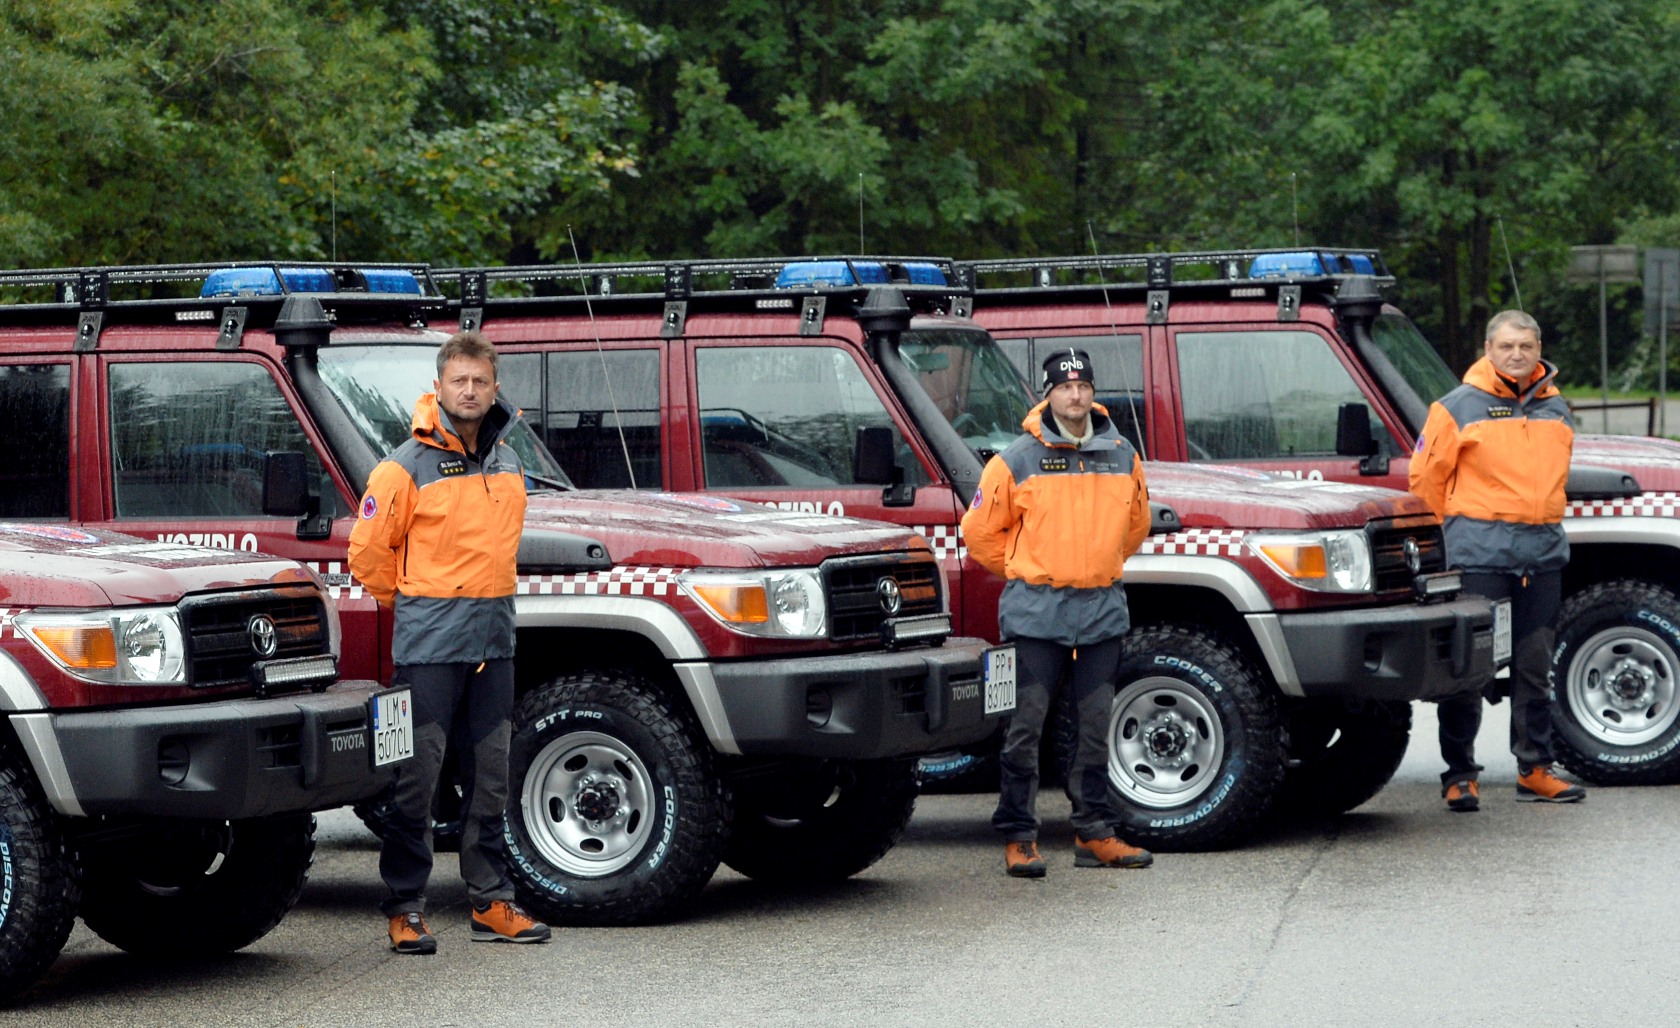 Horskí záchranári s novými landcruisermi